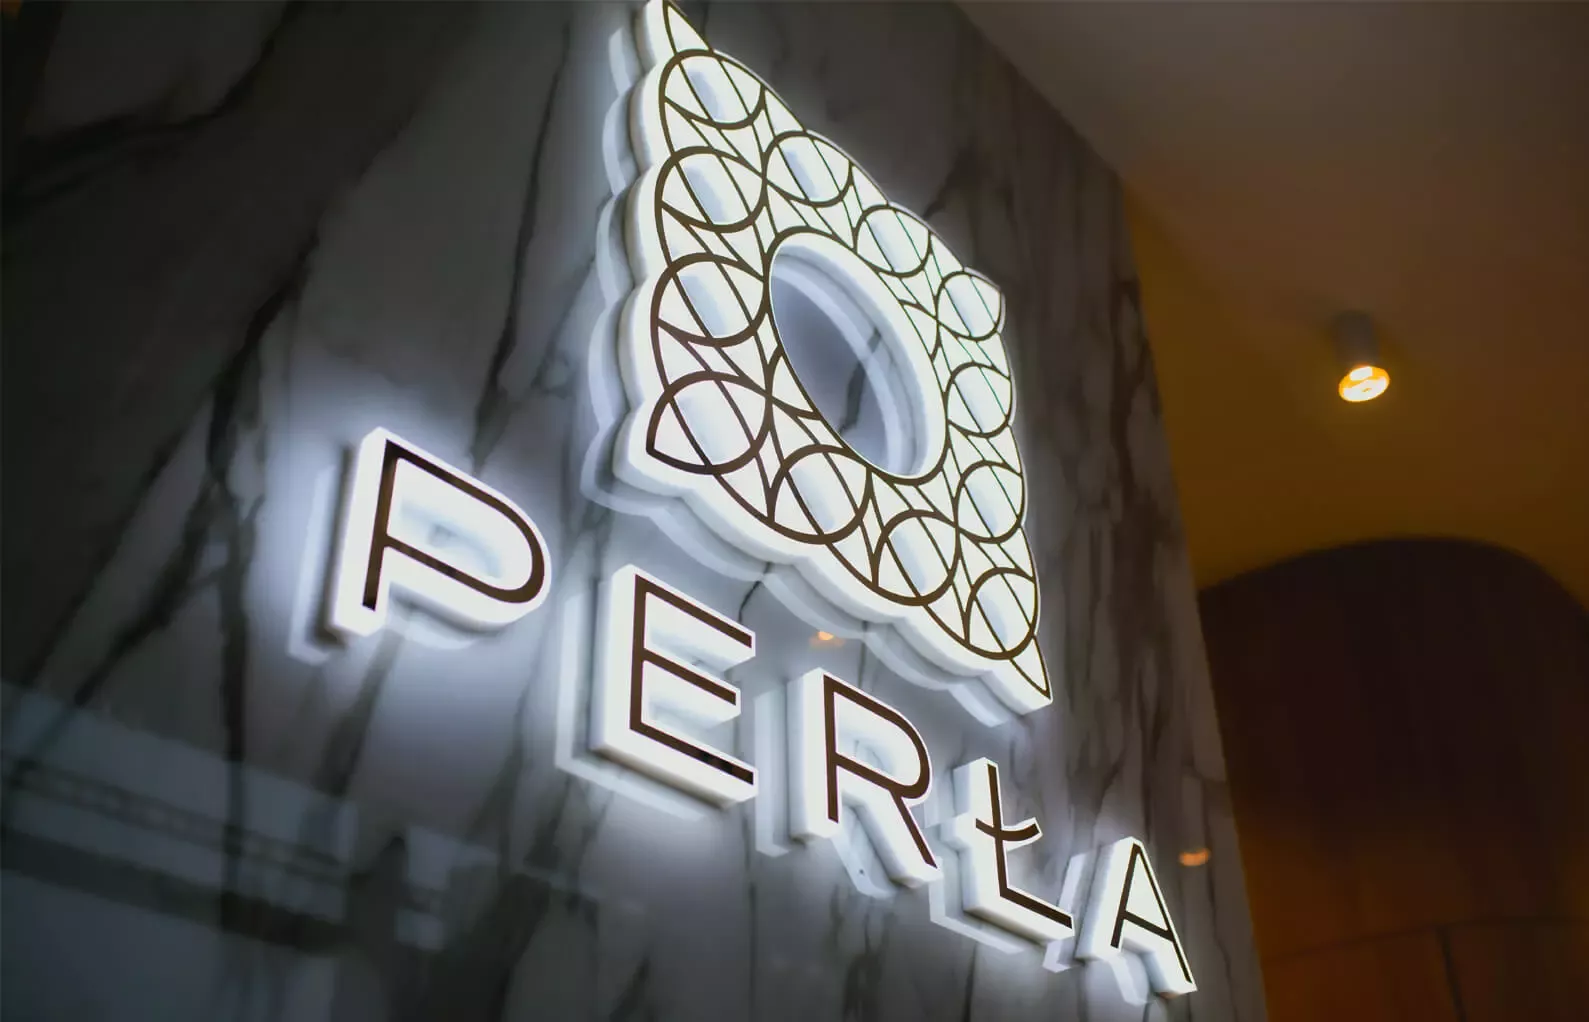 Perła - Podświetlane logo z literami świecącymi bokiem LED